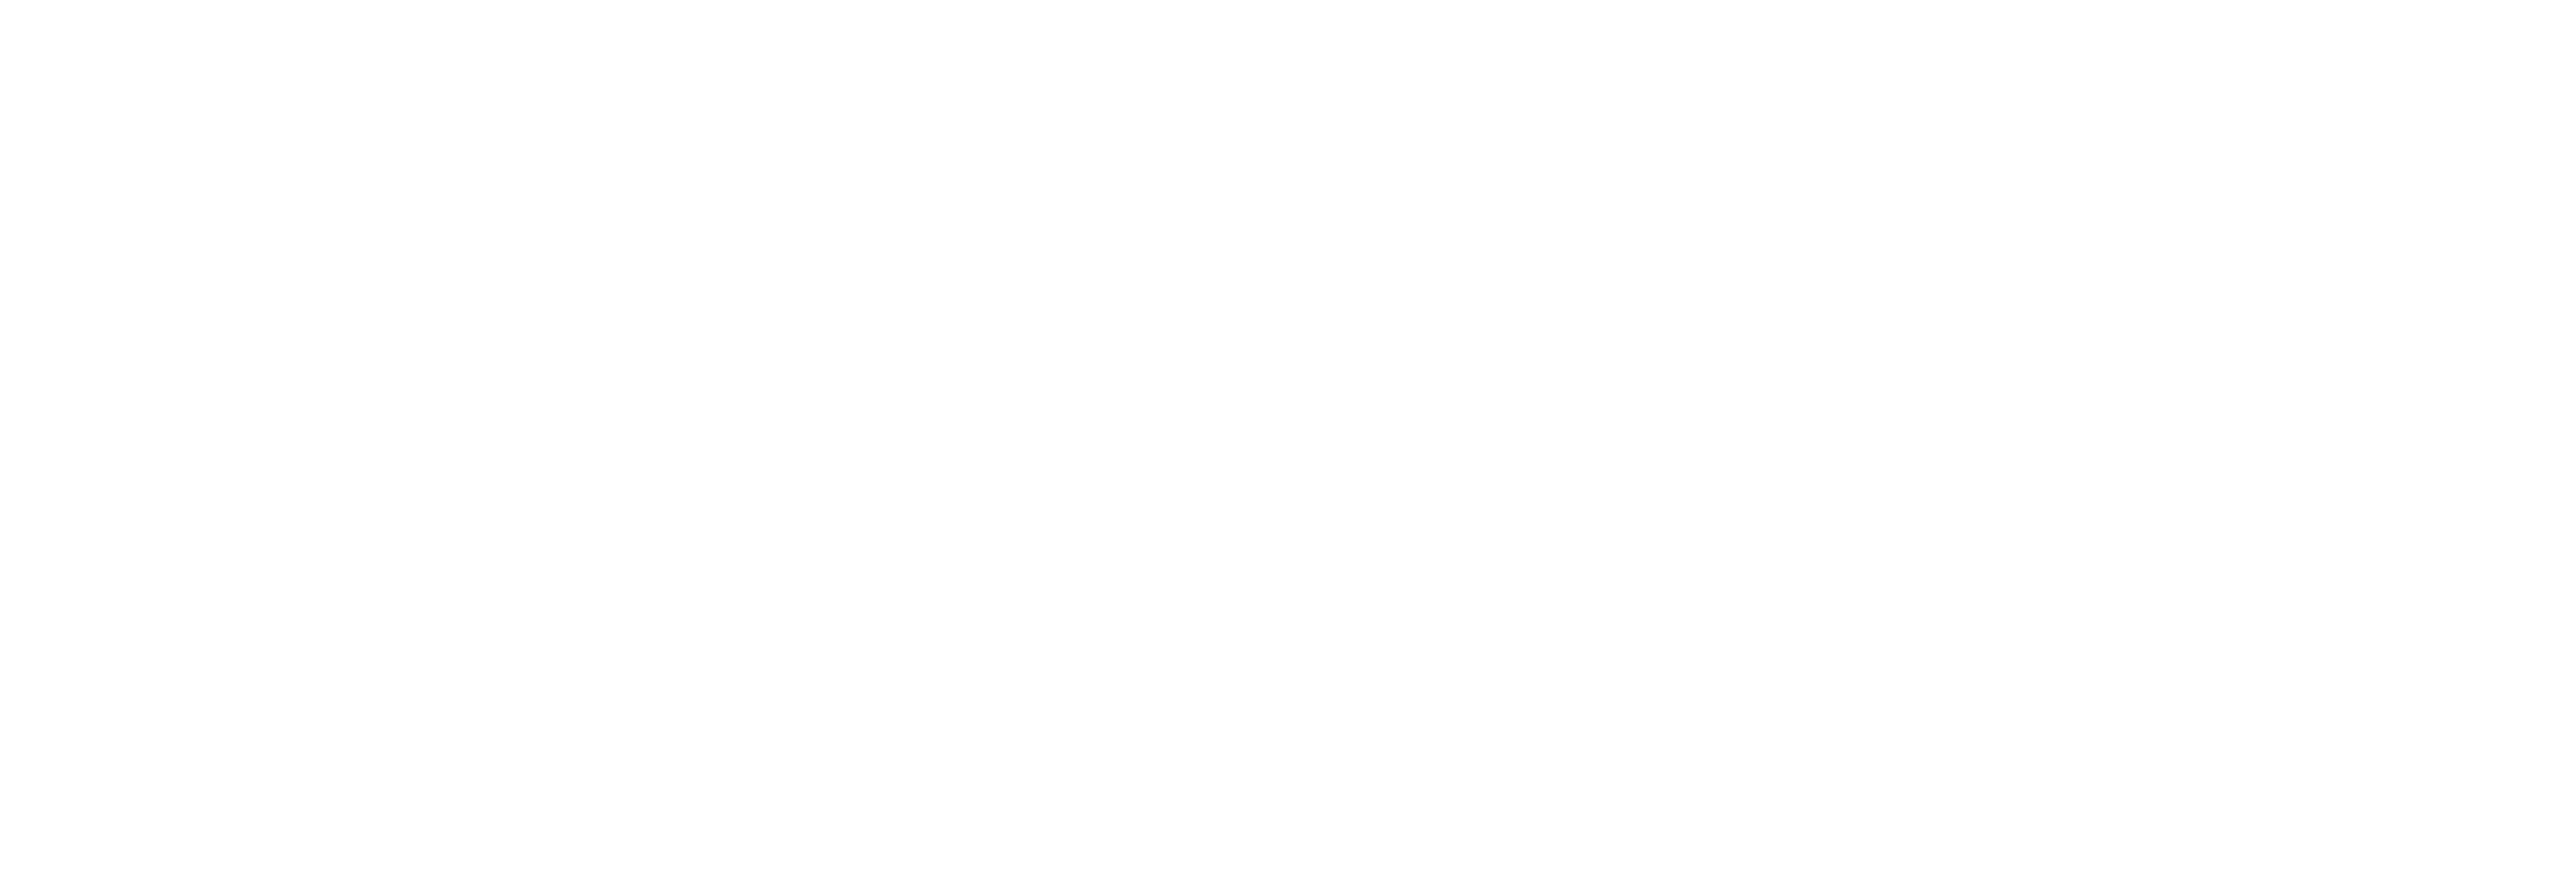 Manga Production